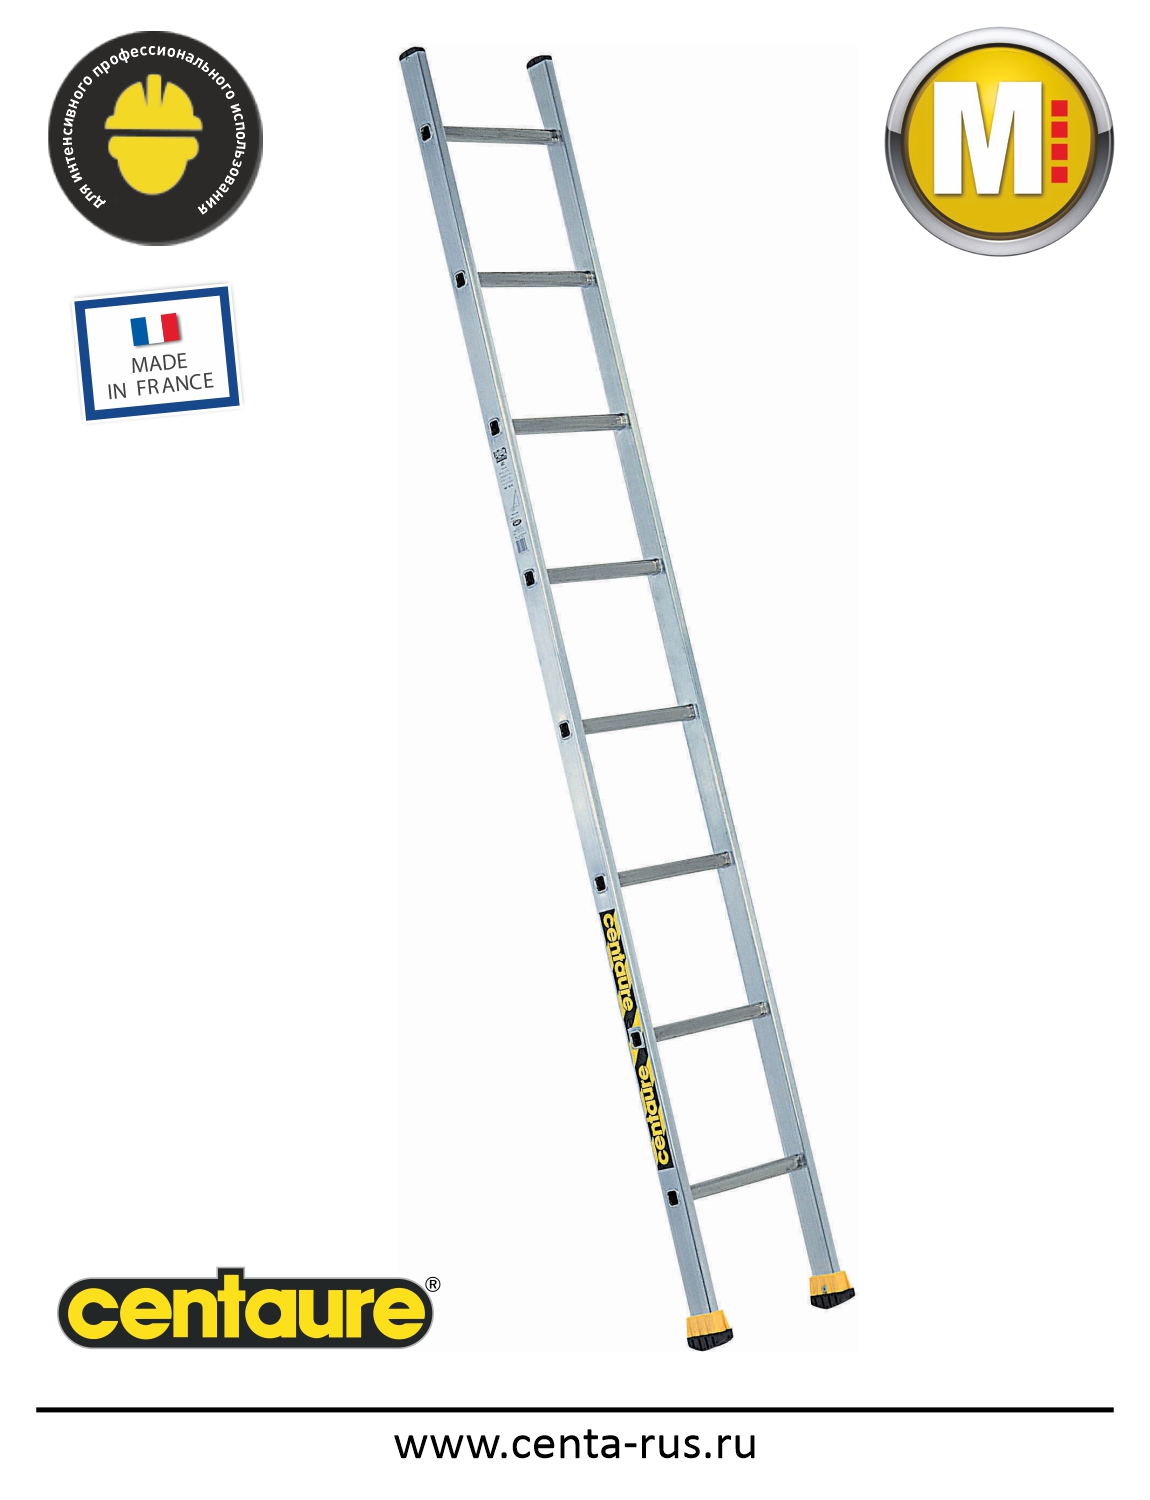 Односекционная лестница Centaure S 6 ступеней 510106